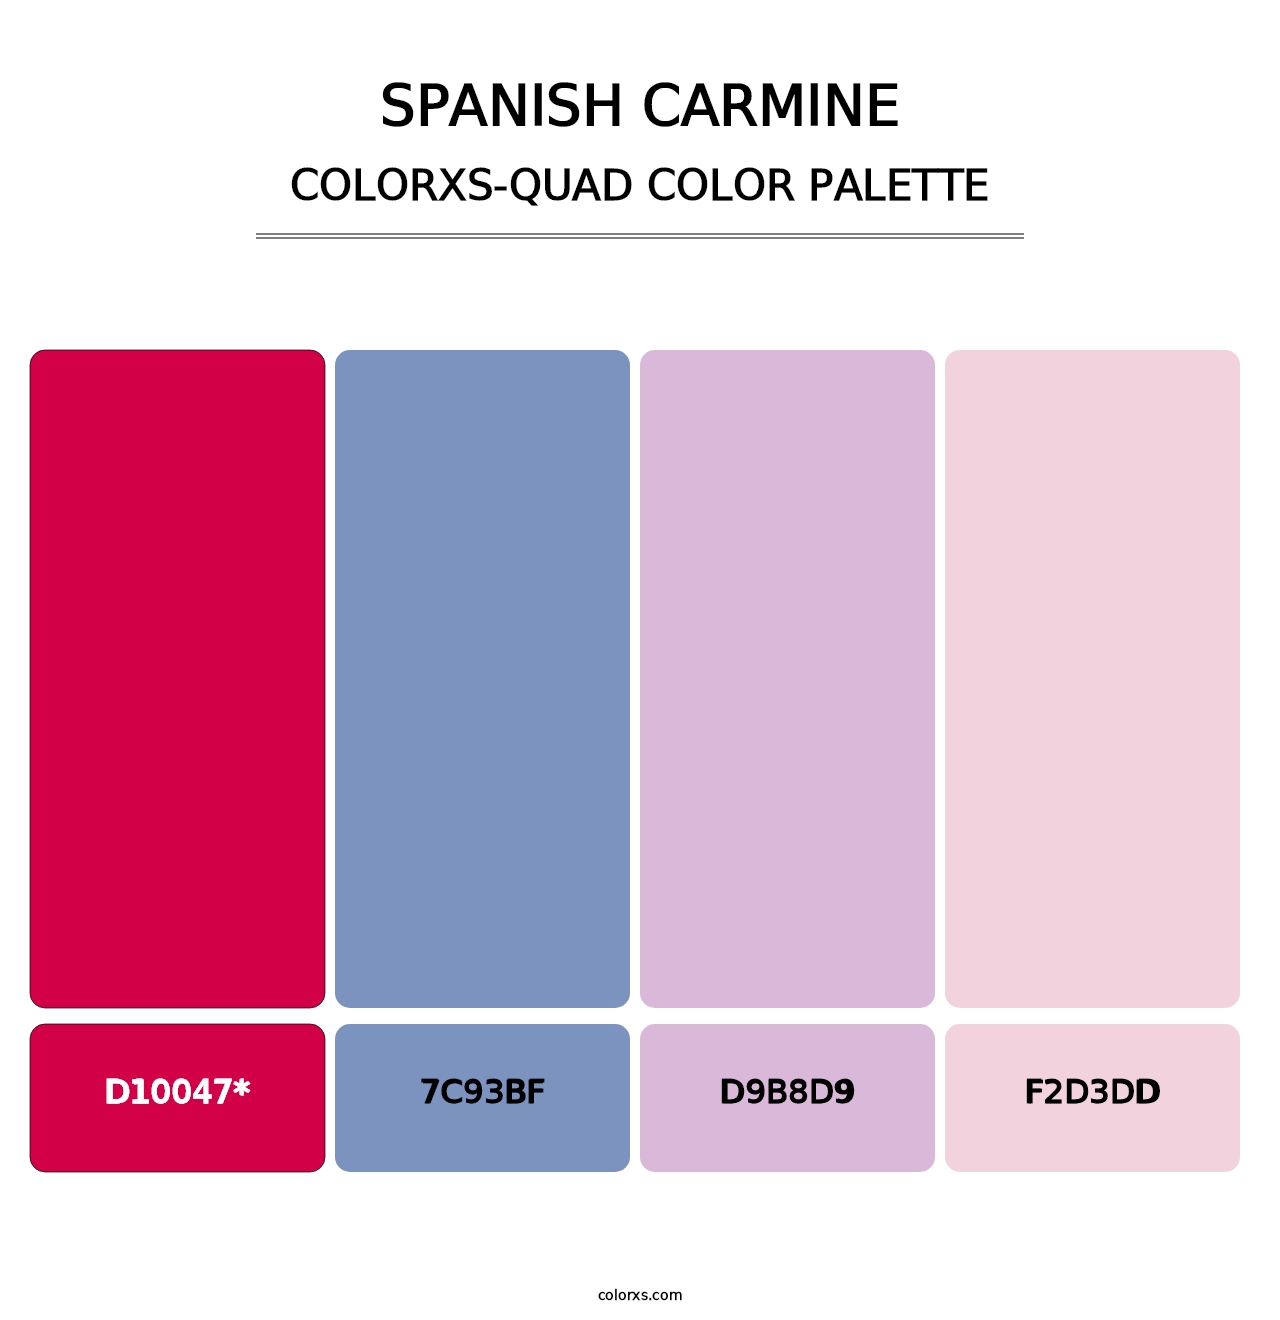 Spanish Carmine - Colorxs Quad Palette